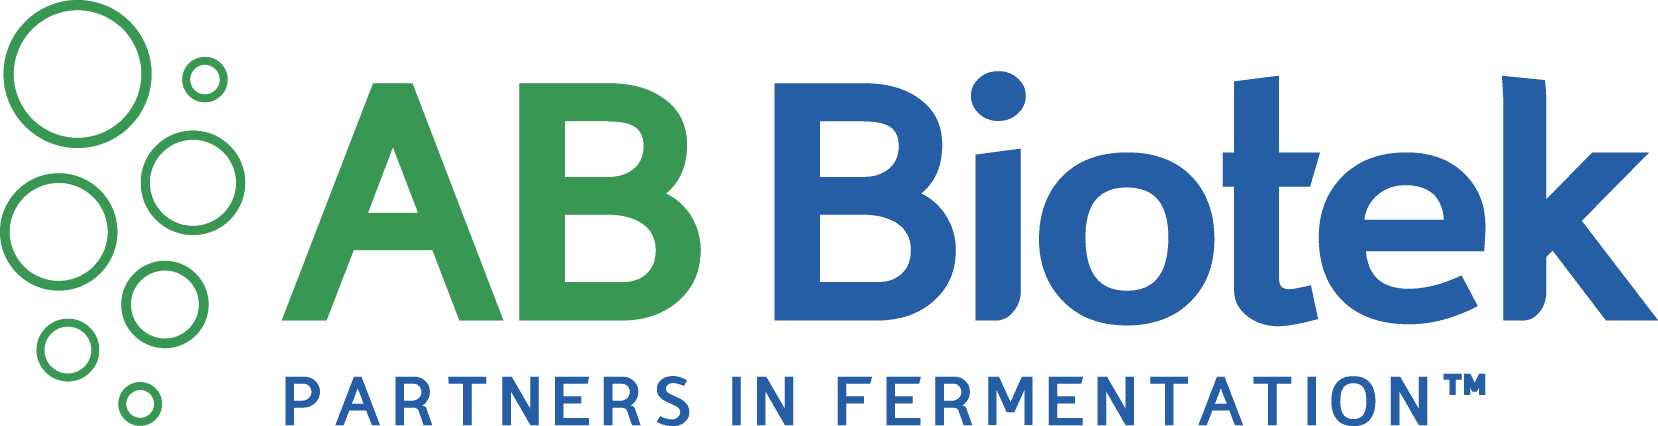 AB Biotek